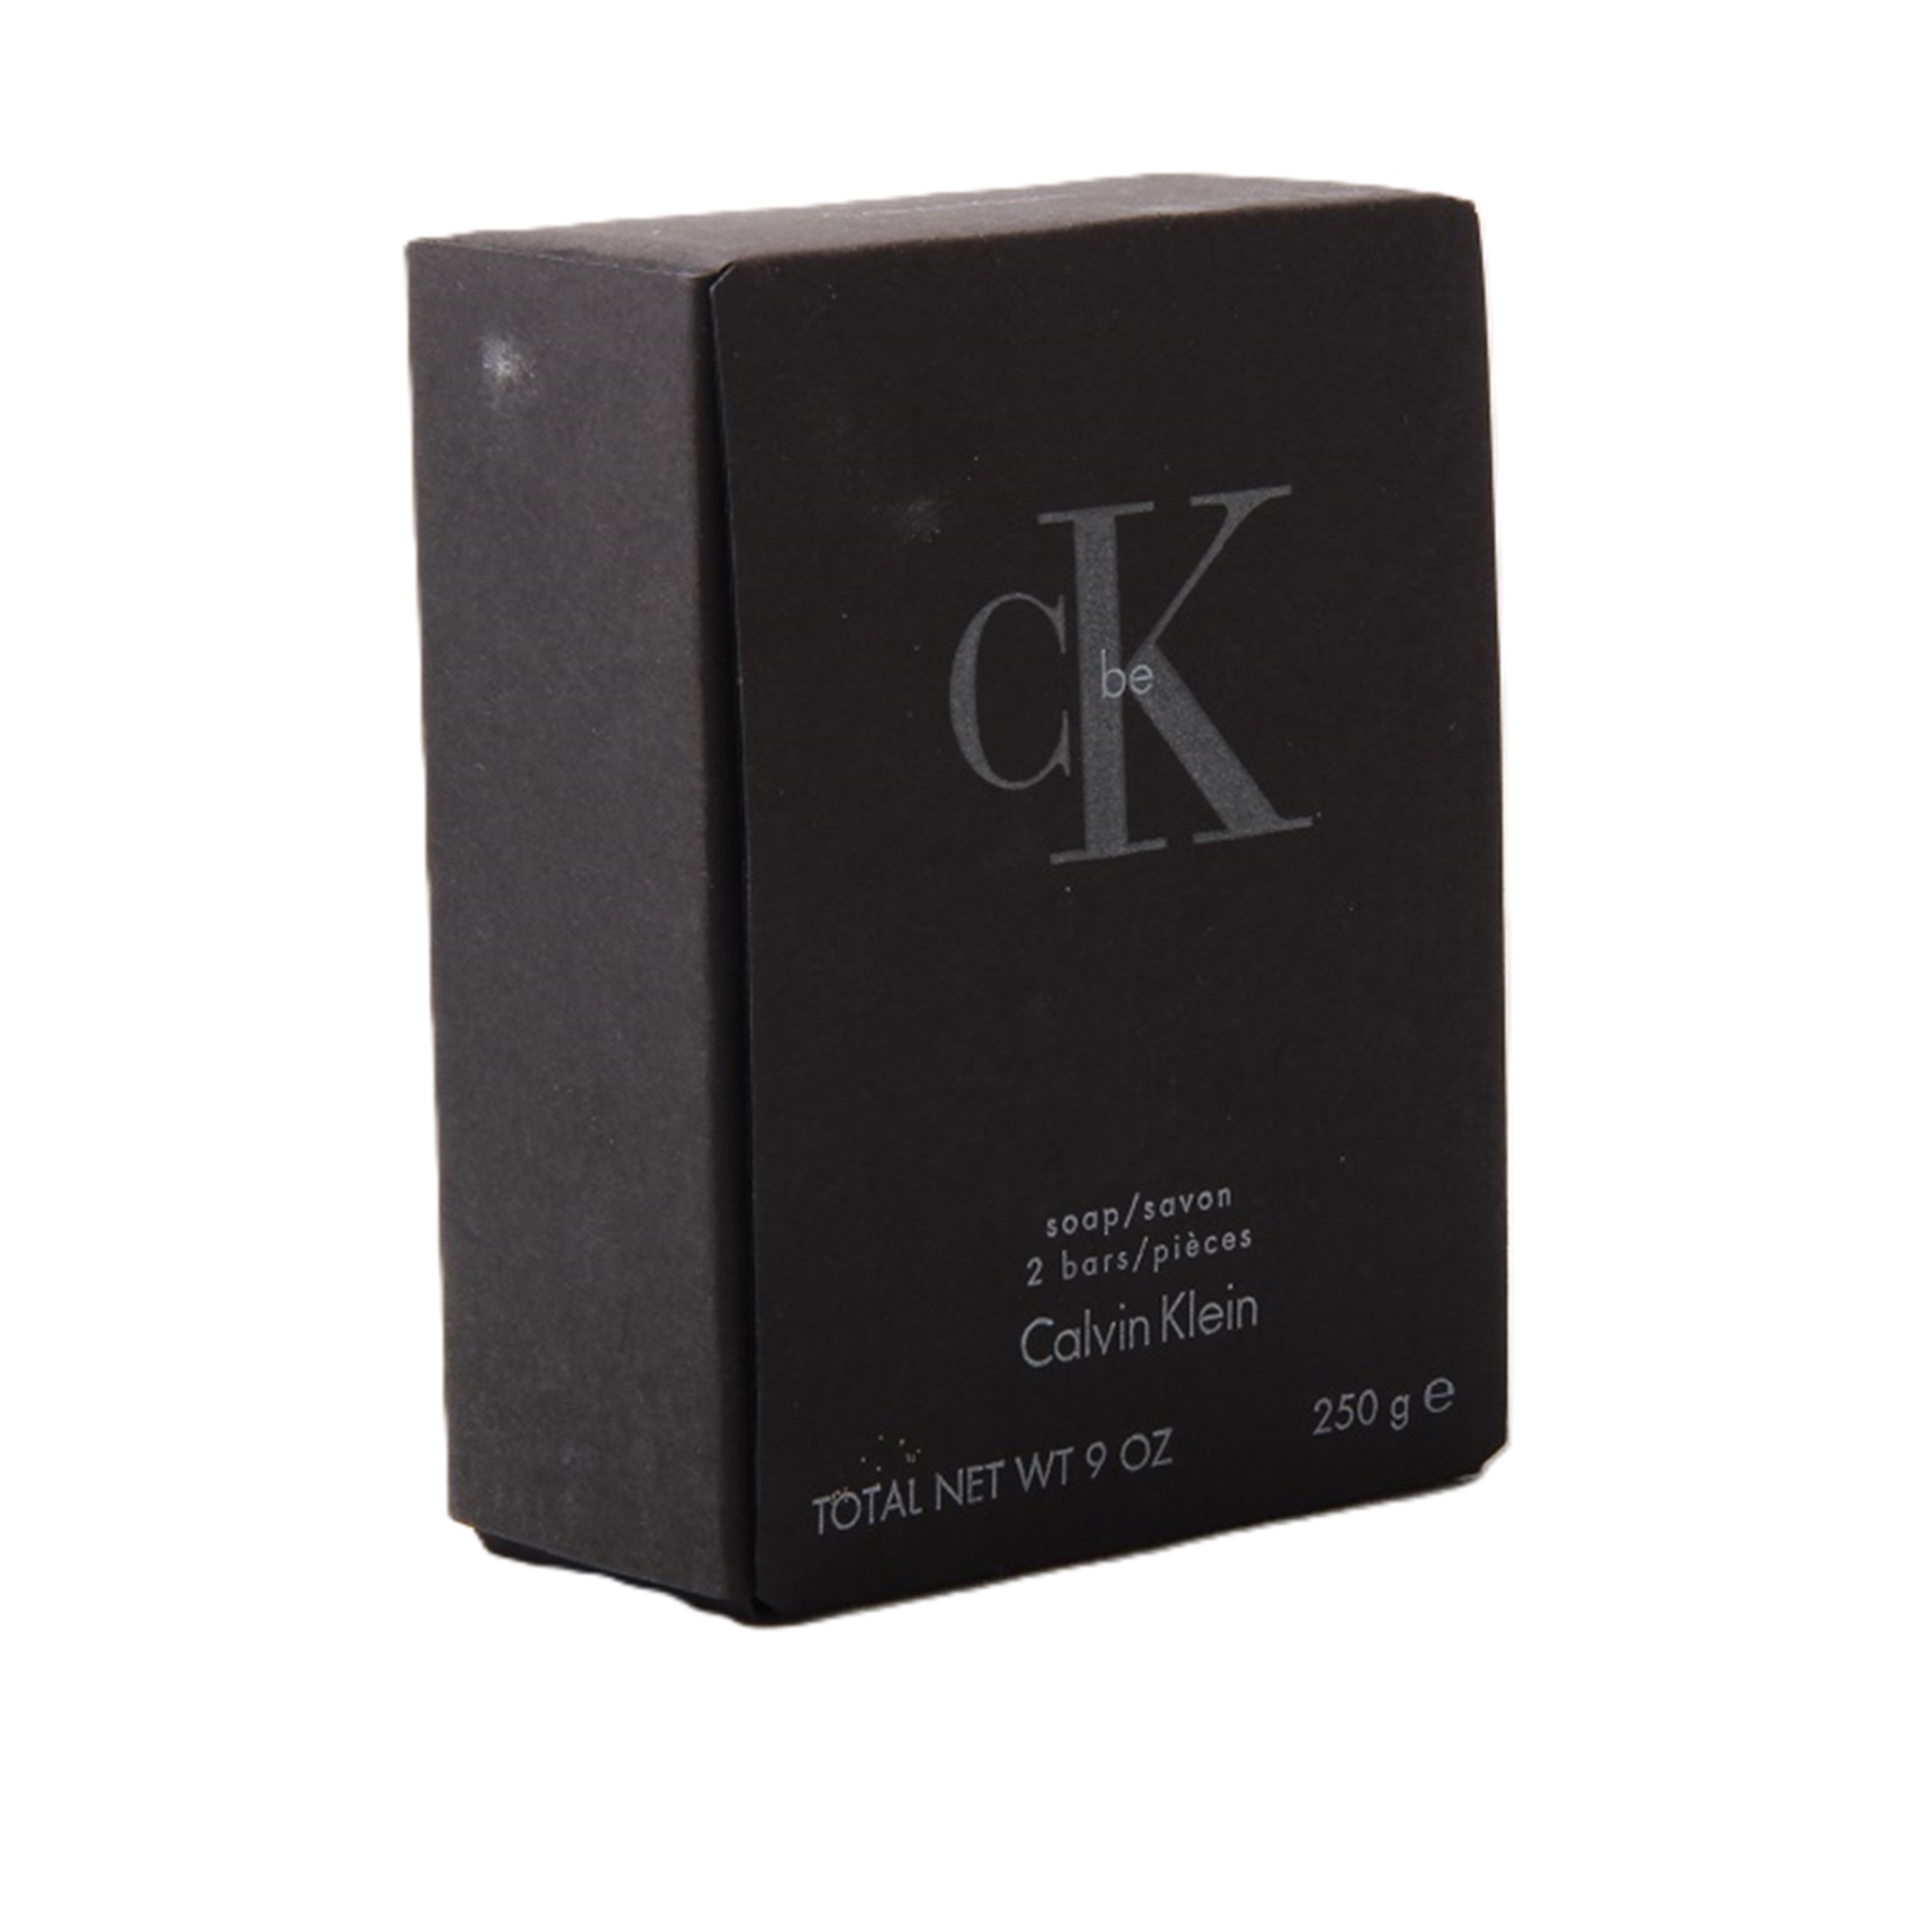 Calvin Klein CK One Seife / Soap / Savon 250g